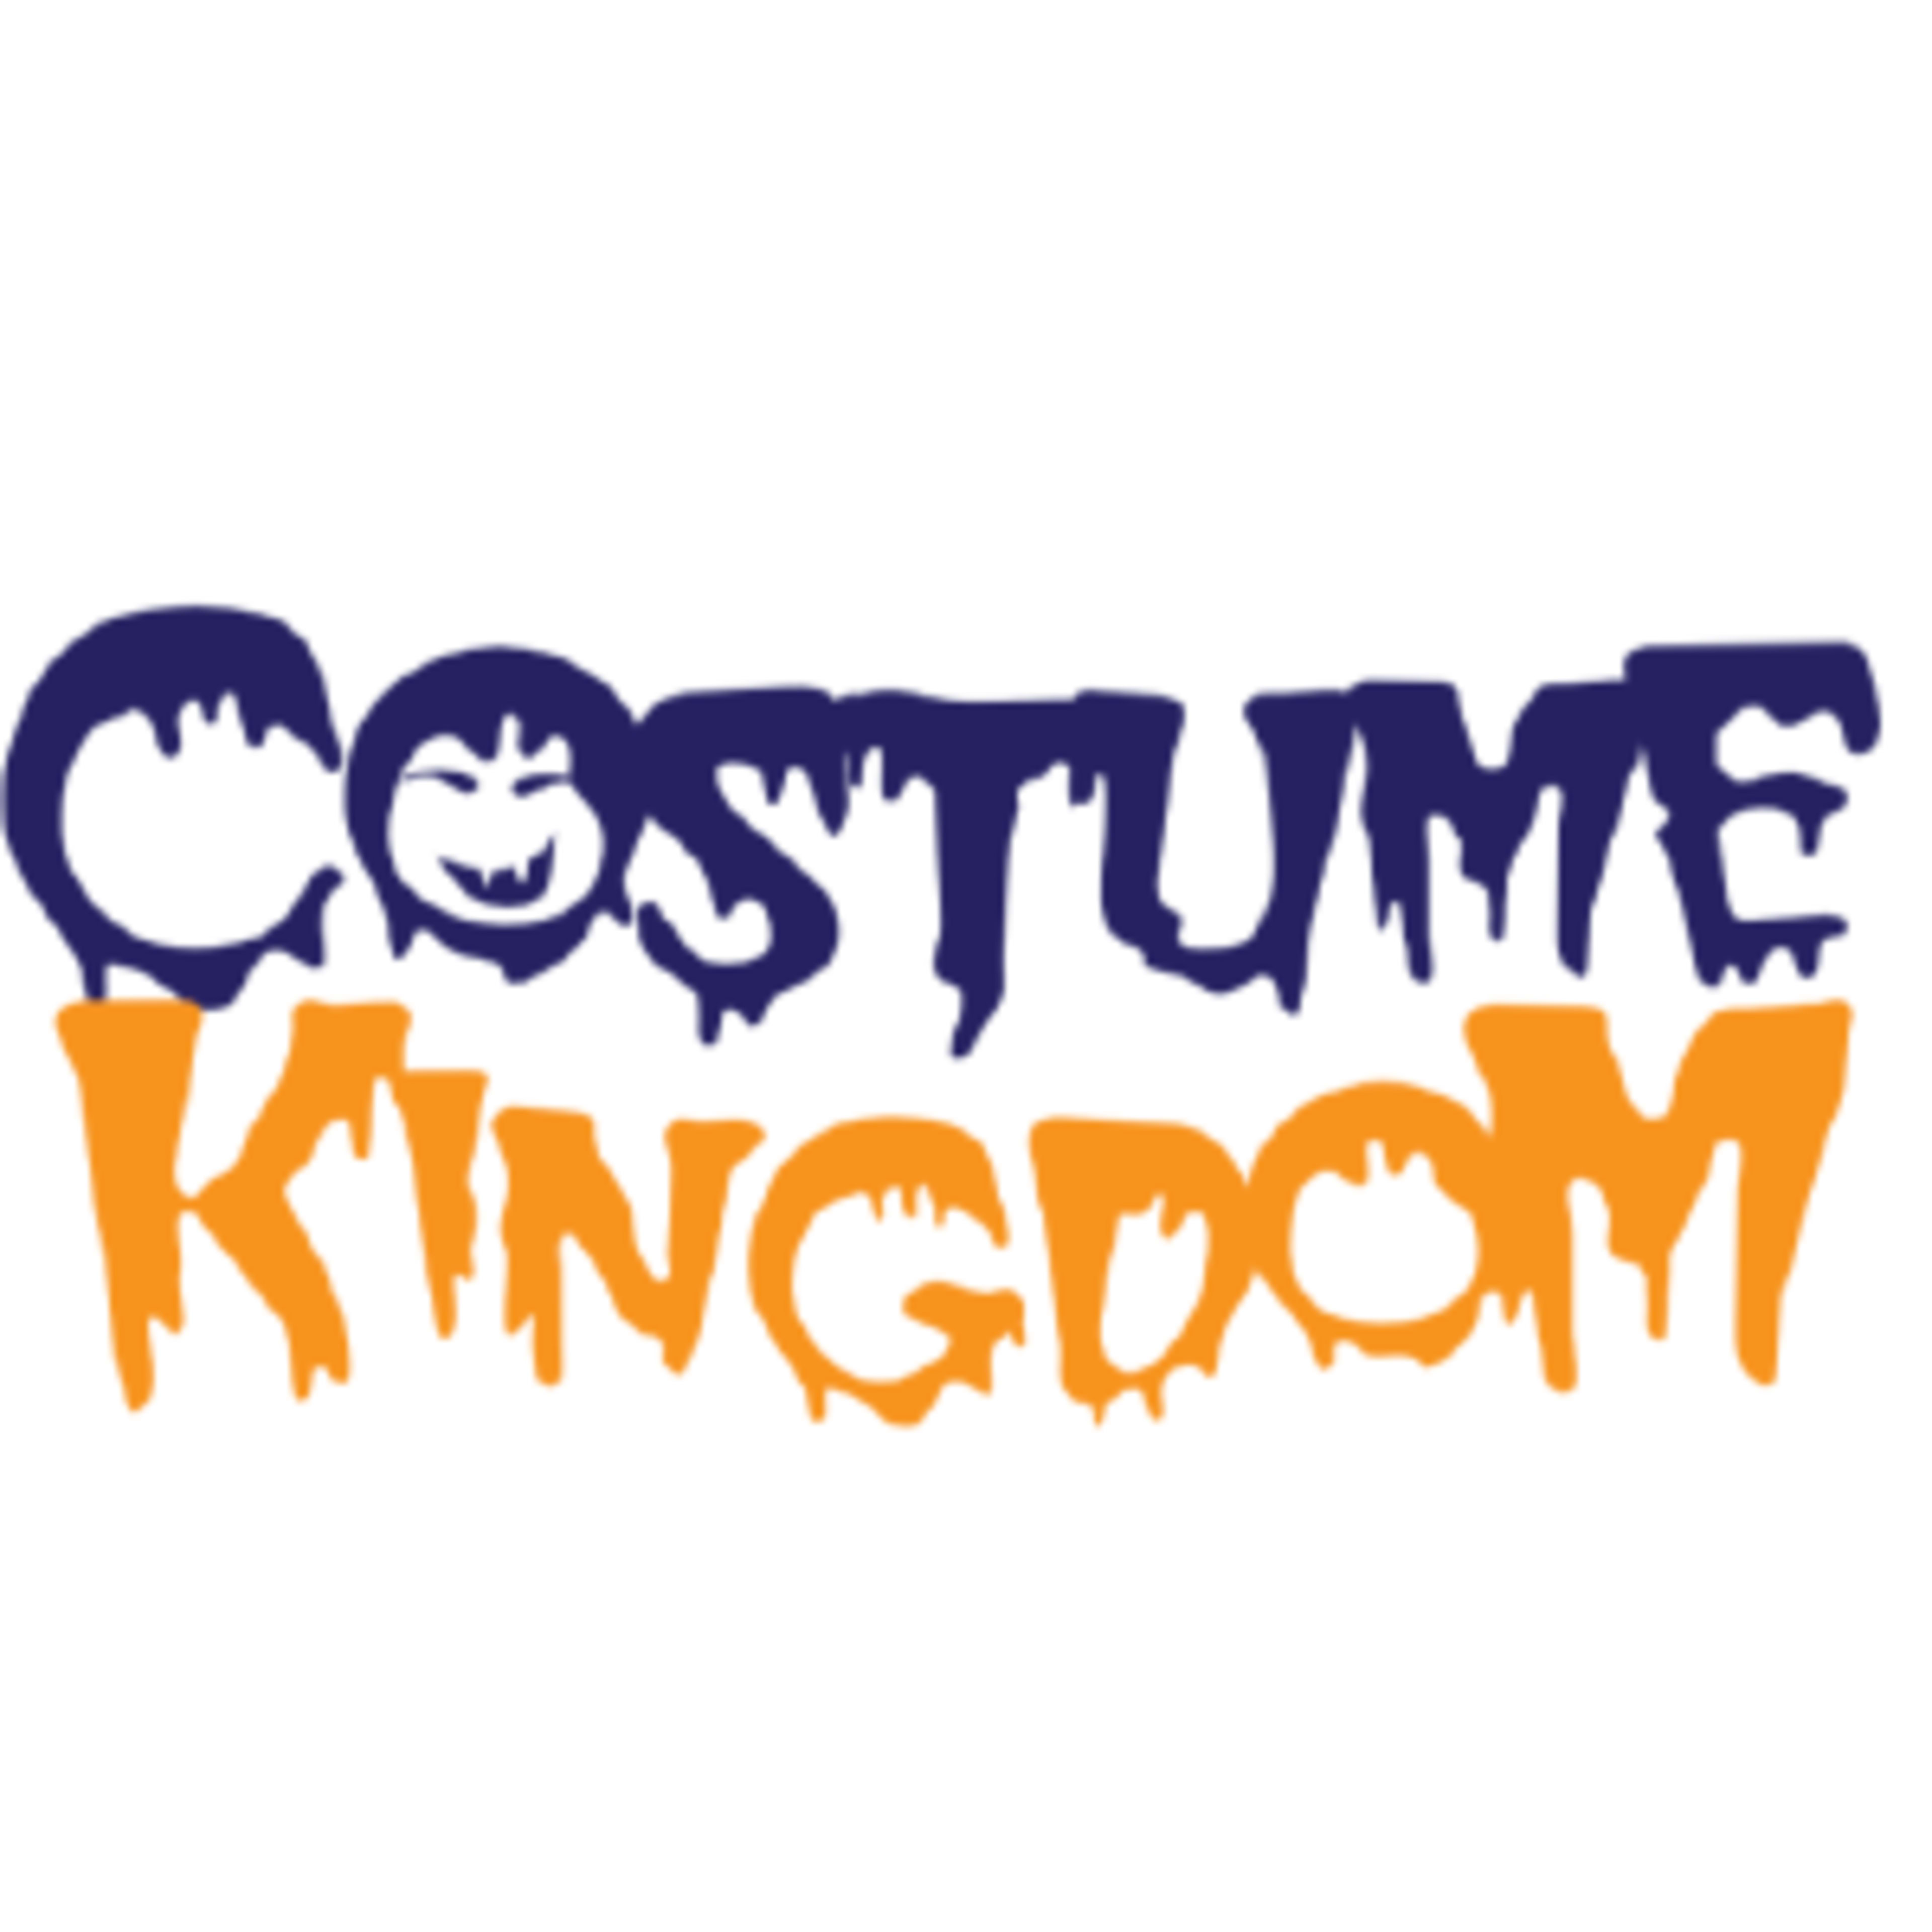 Costume KingdomCode